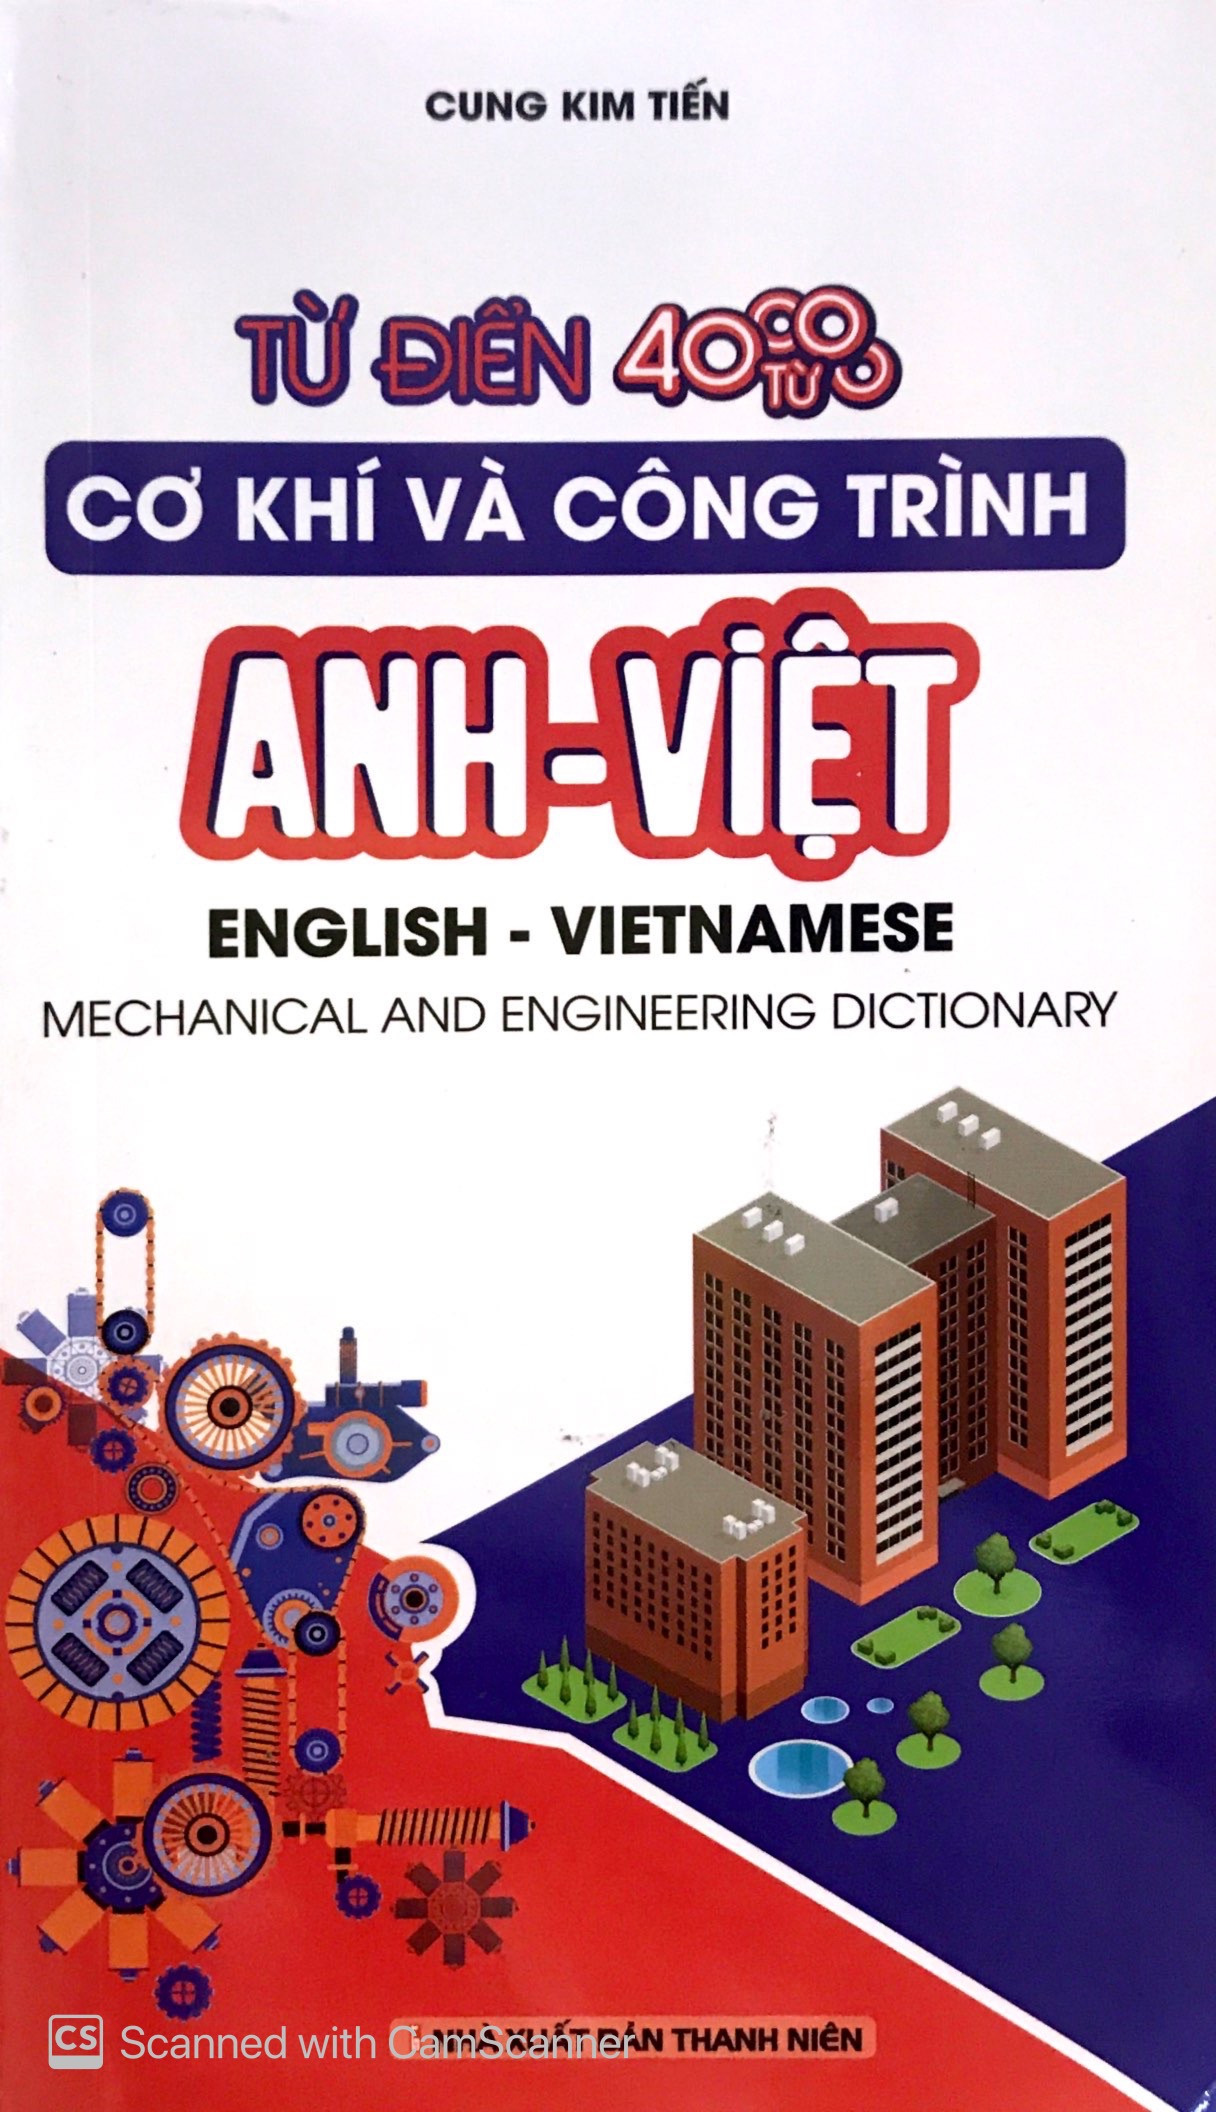 Từ Điển Cơ Khí Và Công Trình Anh - Việt PDF